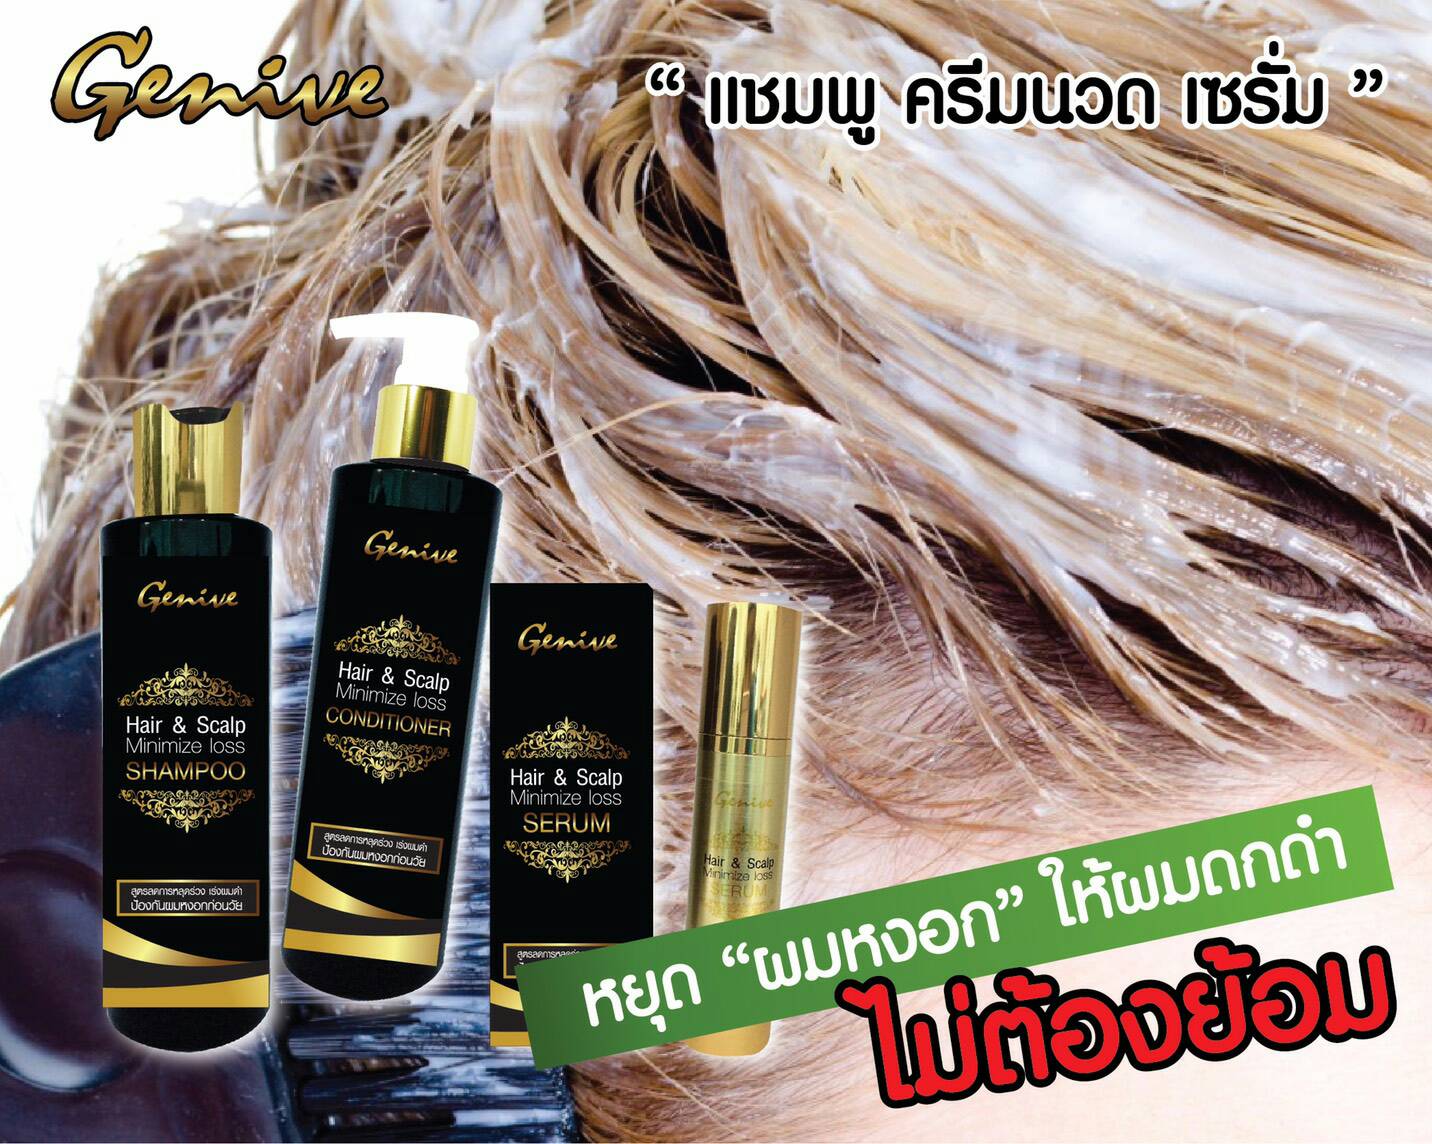 Тайский шампунь и кондиционер для роста волос Genive Hair and Scalp Minimize Loss купить в москве